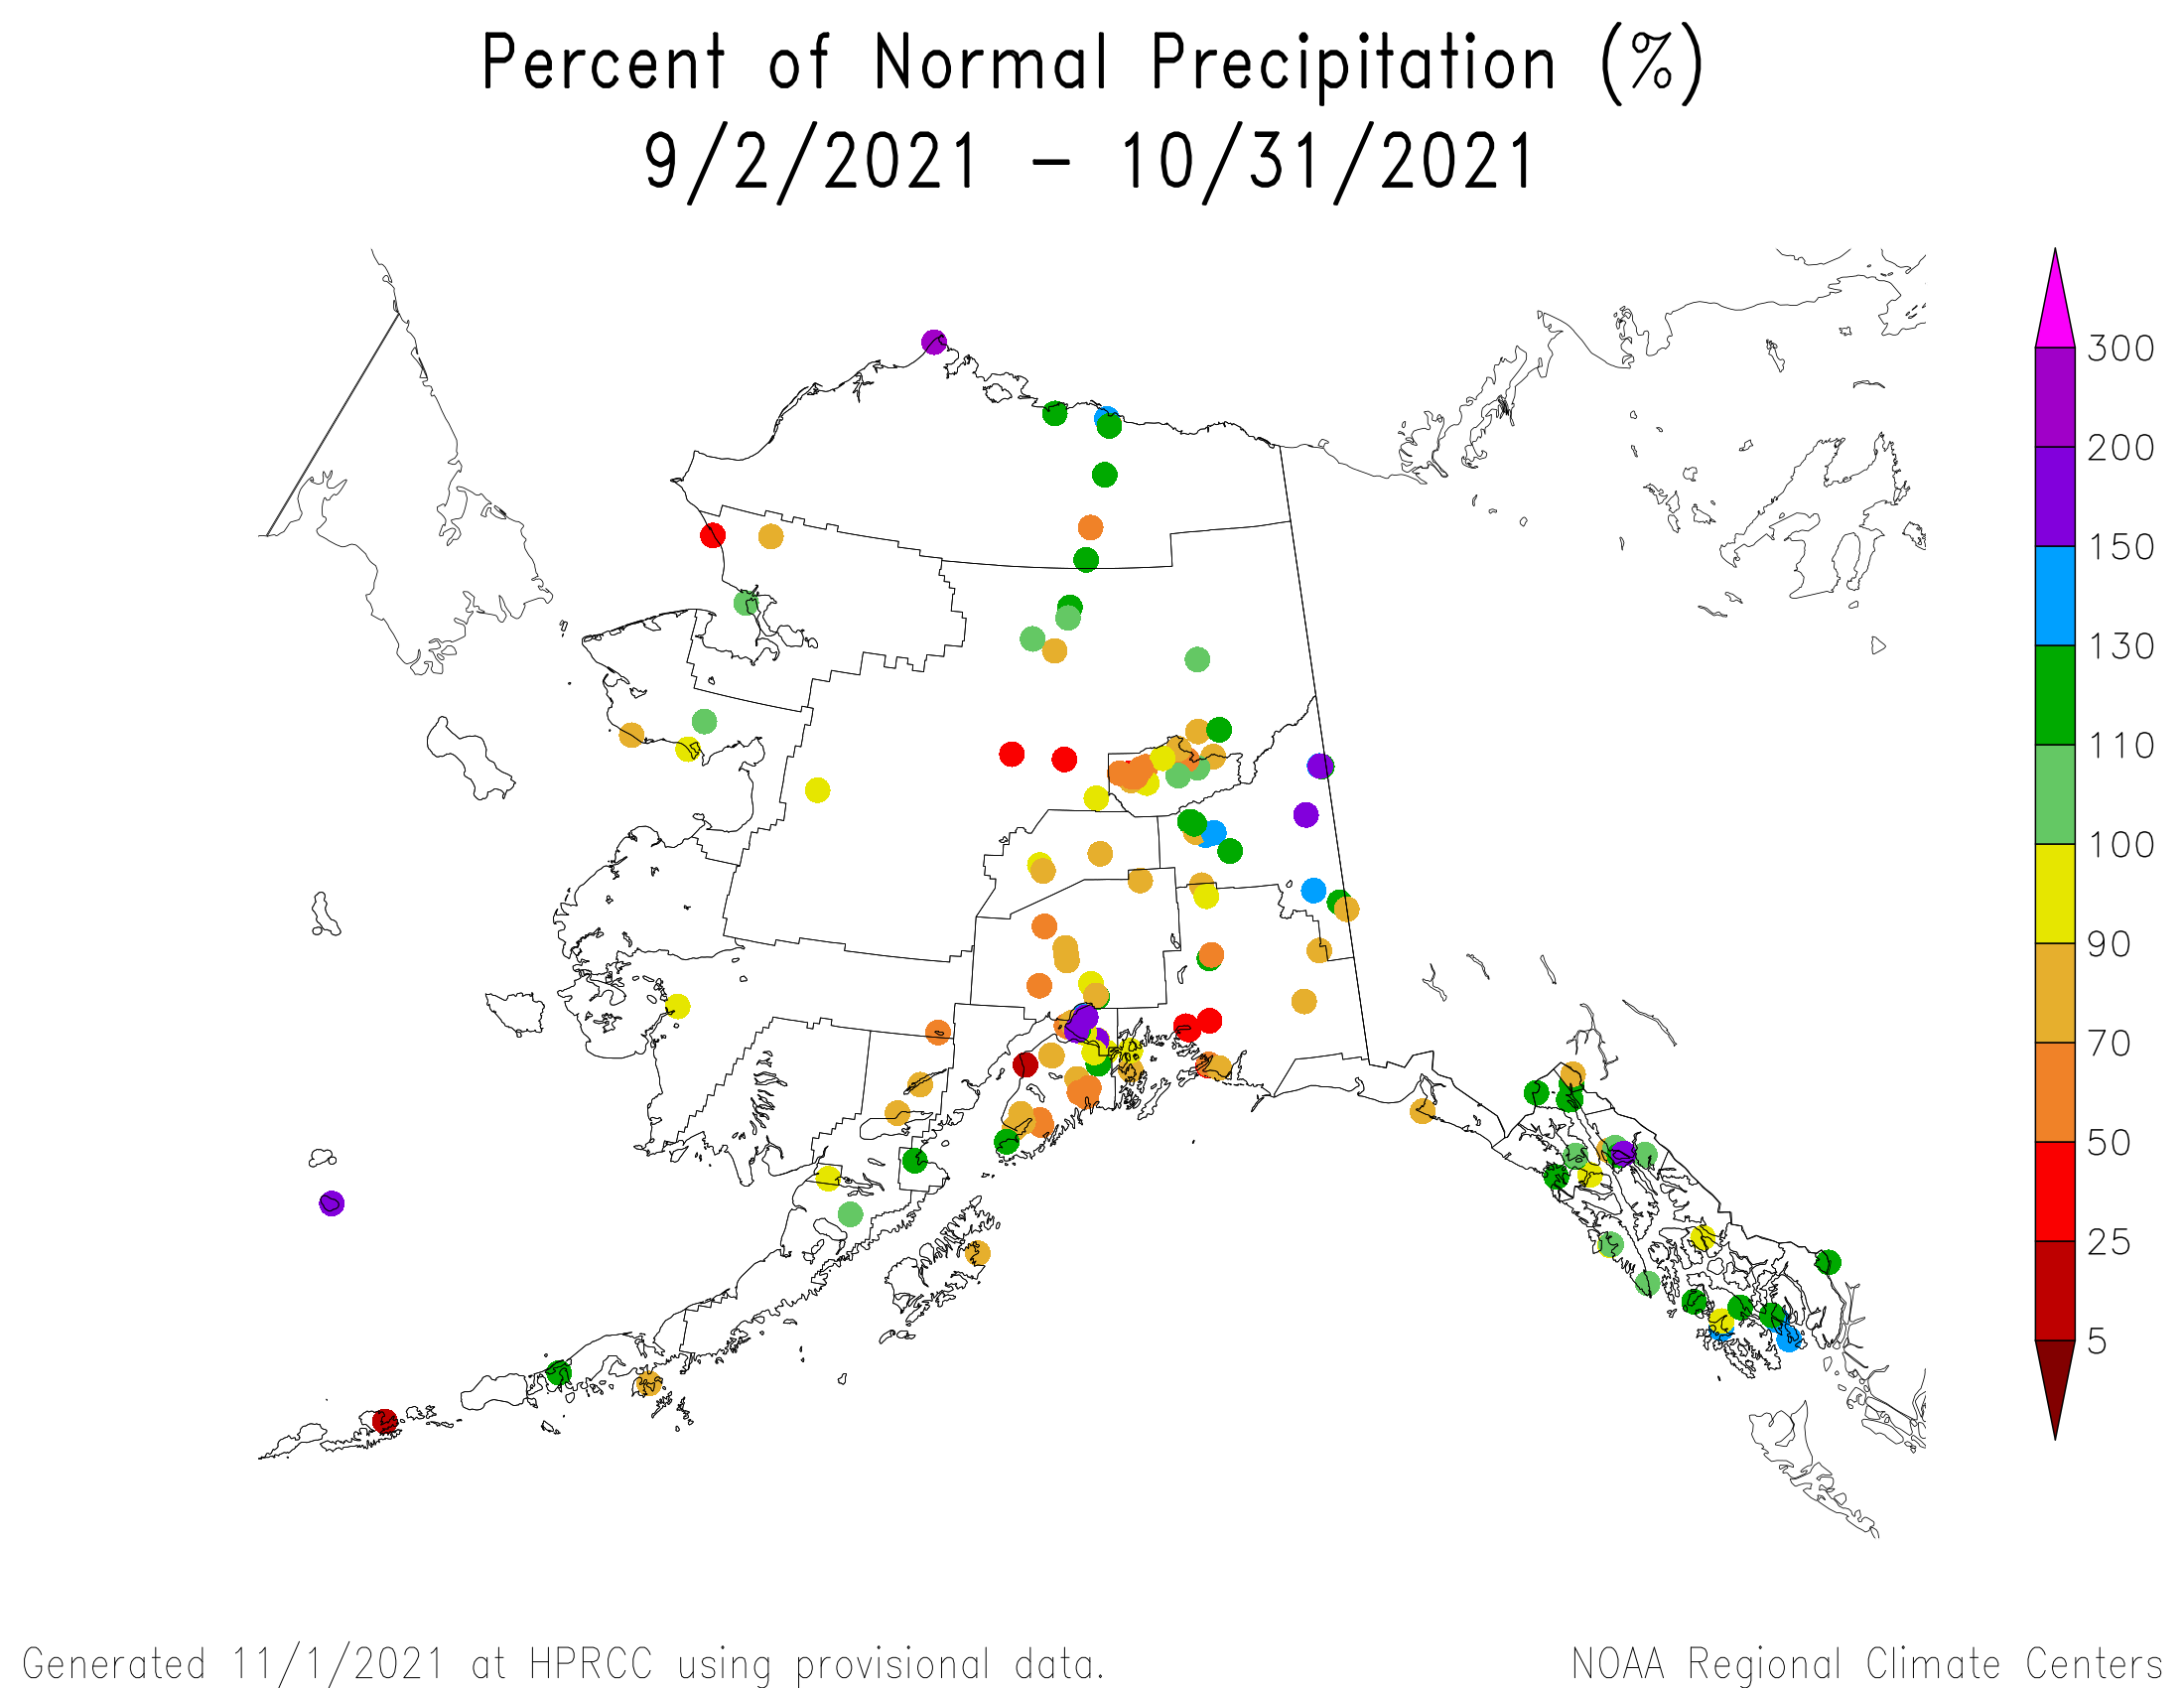 Alaska Percent of Normal Precipitation, September-October 2021